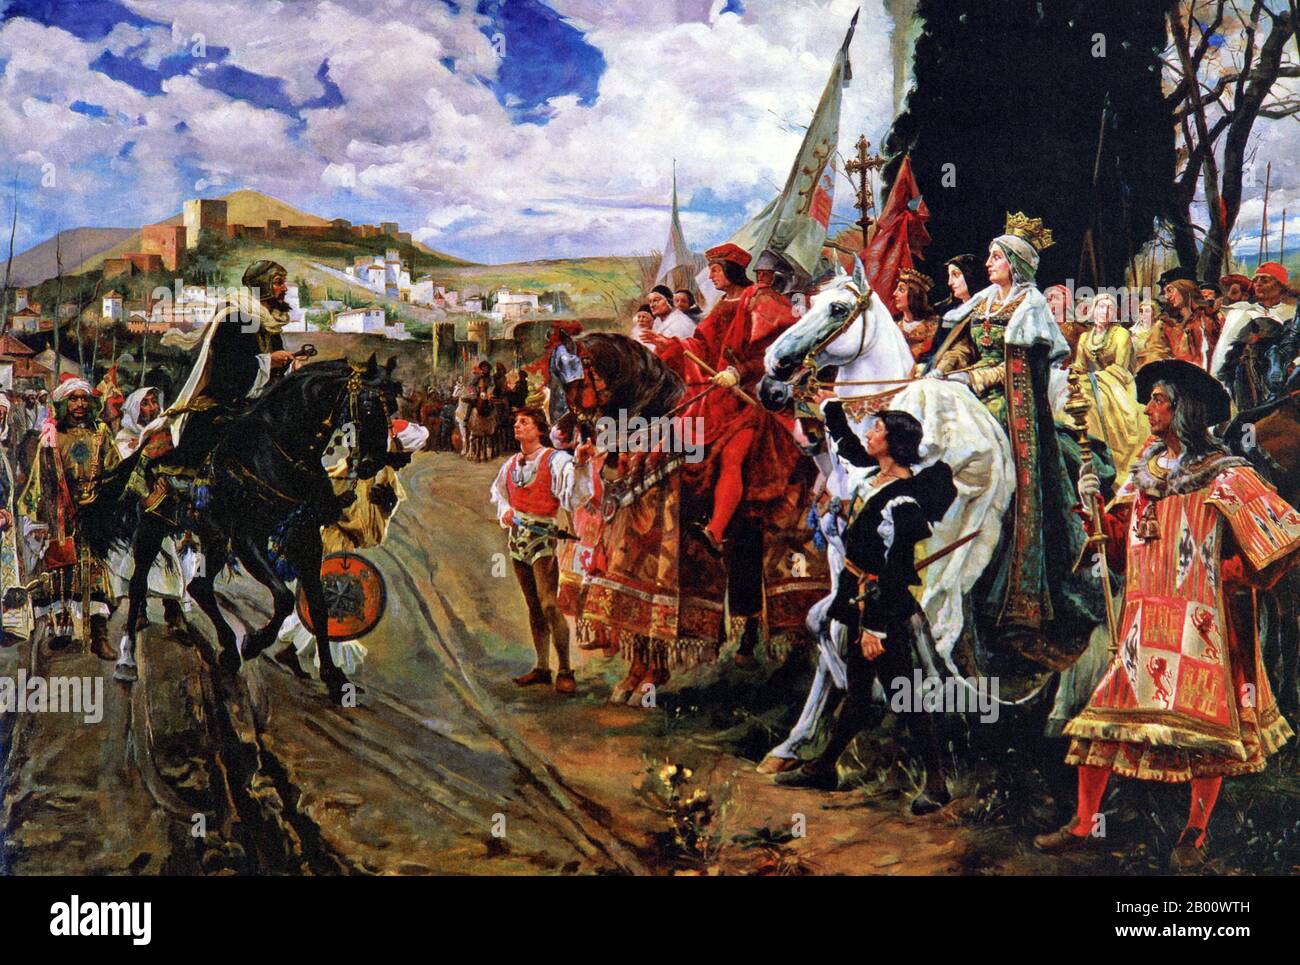 Spagna/Maghreb: "La capitolazione di Granada". Olio su tela dipinto di Francisco Pradilla Ortiz (1848-1921), 1882 Abu 'abd-Allah Muhammad XII (c.. 1460- c. 1533), conosciuto come Boabdil, fu il ventiduesimo e ultimo governatore Nasrido di Granada. Nel 1491, Muhammad XII fu convocato da Ferdinando e Isabella per cedere la città di Granada, e al suo rifiuto fu assediato dai Castiliani. Alla fine, il 2 gennaio 1492, Granada fu ceduta. Boabdil consegnò le chiavi di Granada a Ferdinando lungo le rive del Genil, segnando la fine del dominio arabo in Spagna. Foto Stock